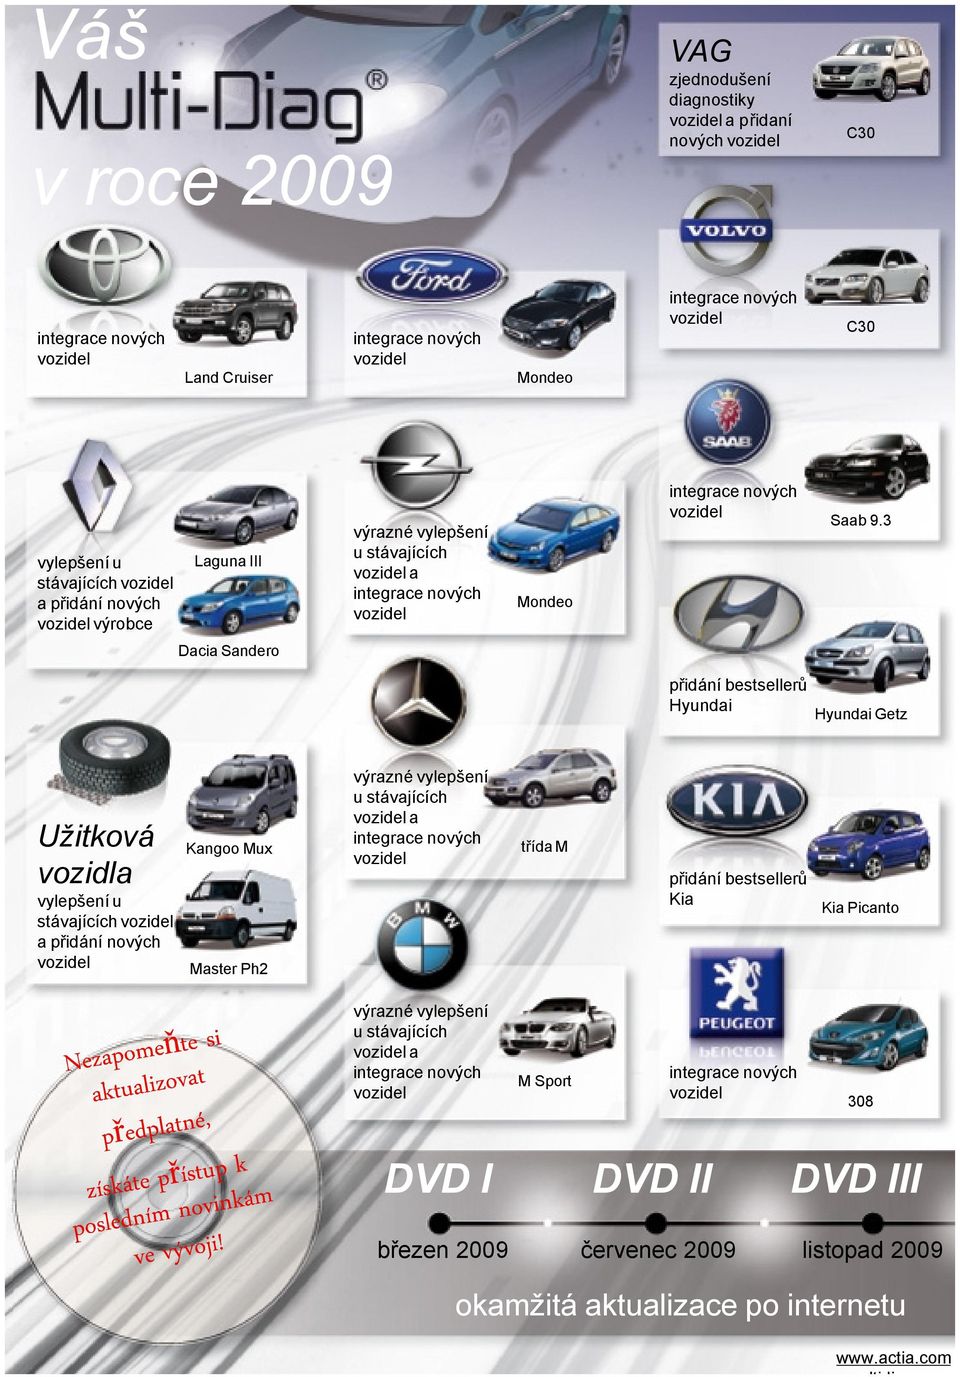 3 Dacia Sandero přidání bestsellerů Hyundai Hyundai Getz Užitková vozidla vylepšení u stávajících a přidání nových Kangoo Mux Master Ph2 výrazné